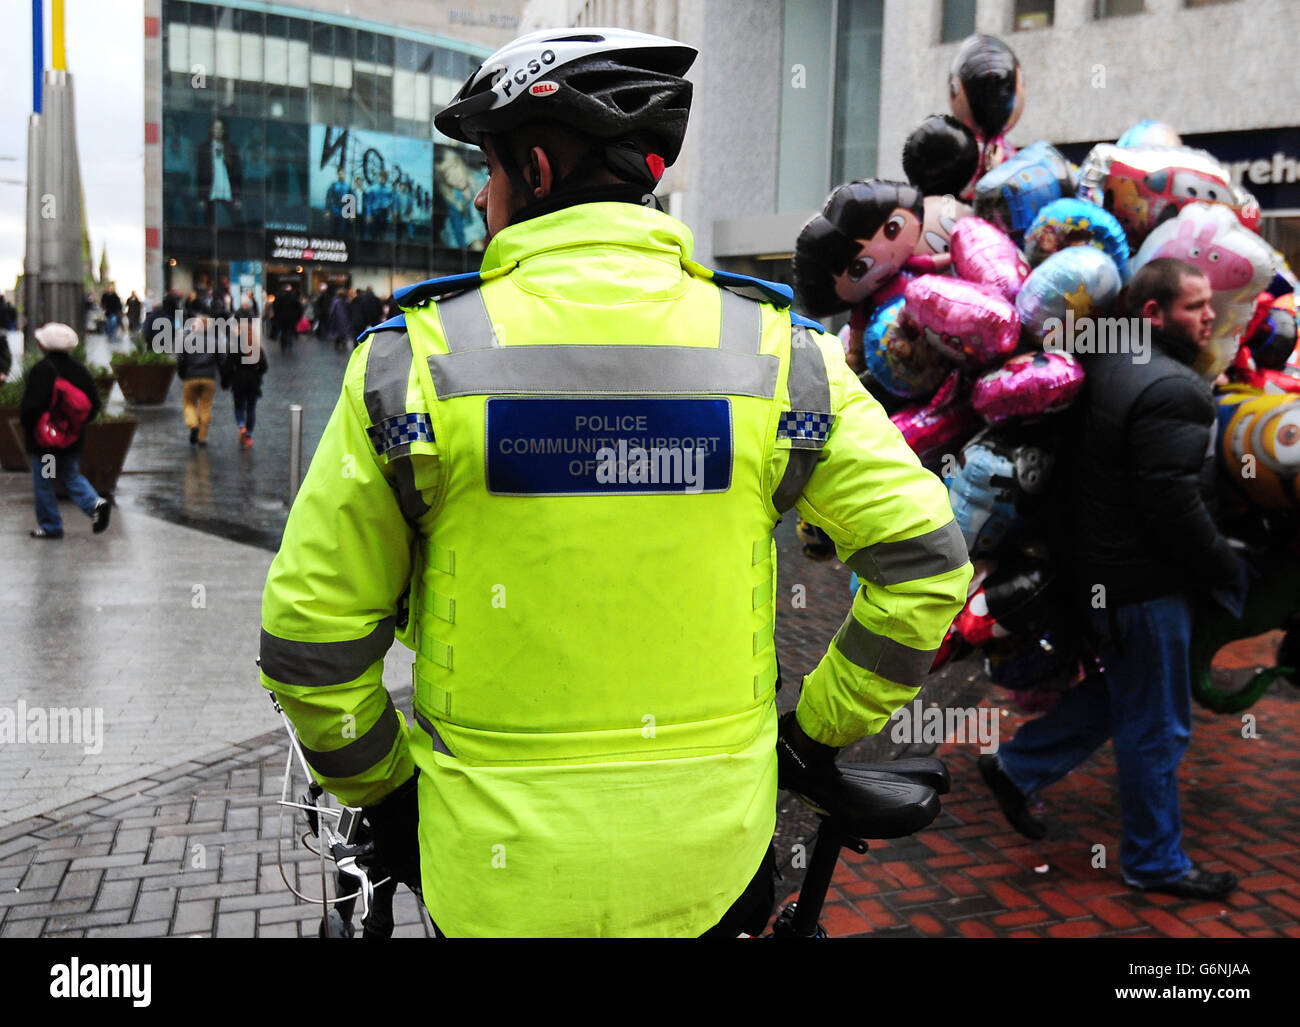 Un oficial de apoyo comunitario de la policía utiliza una bicicleta policial para patrullar las calles del centro de Birmingham. Foto de stock